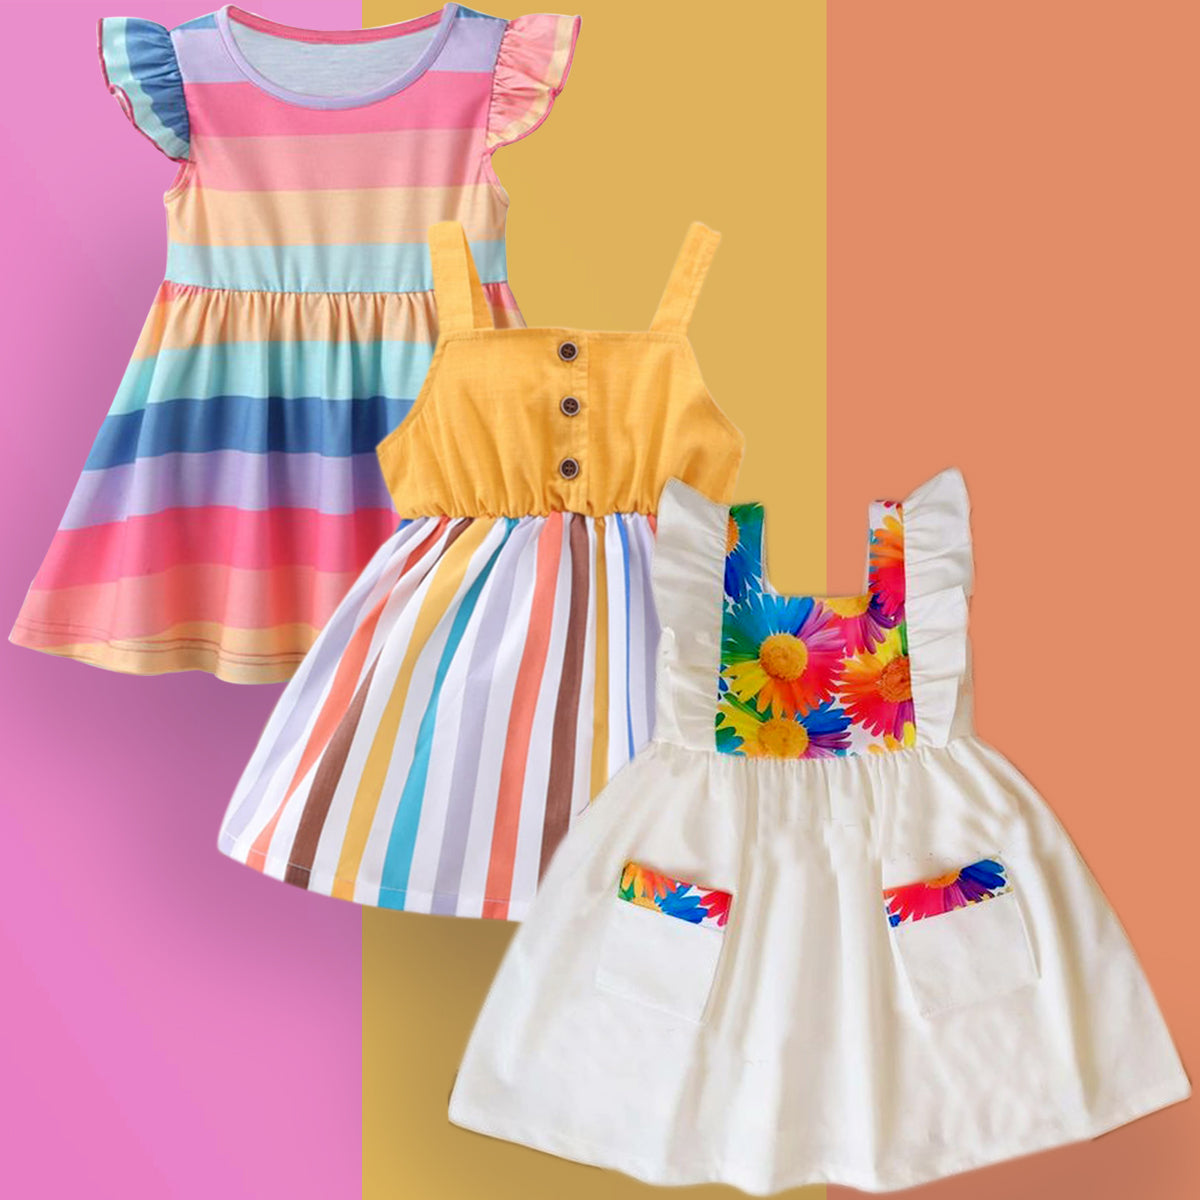 Girls Party Wear Online | Pink Dresses For Kids – www.liandli.in